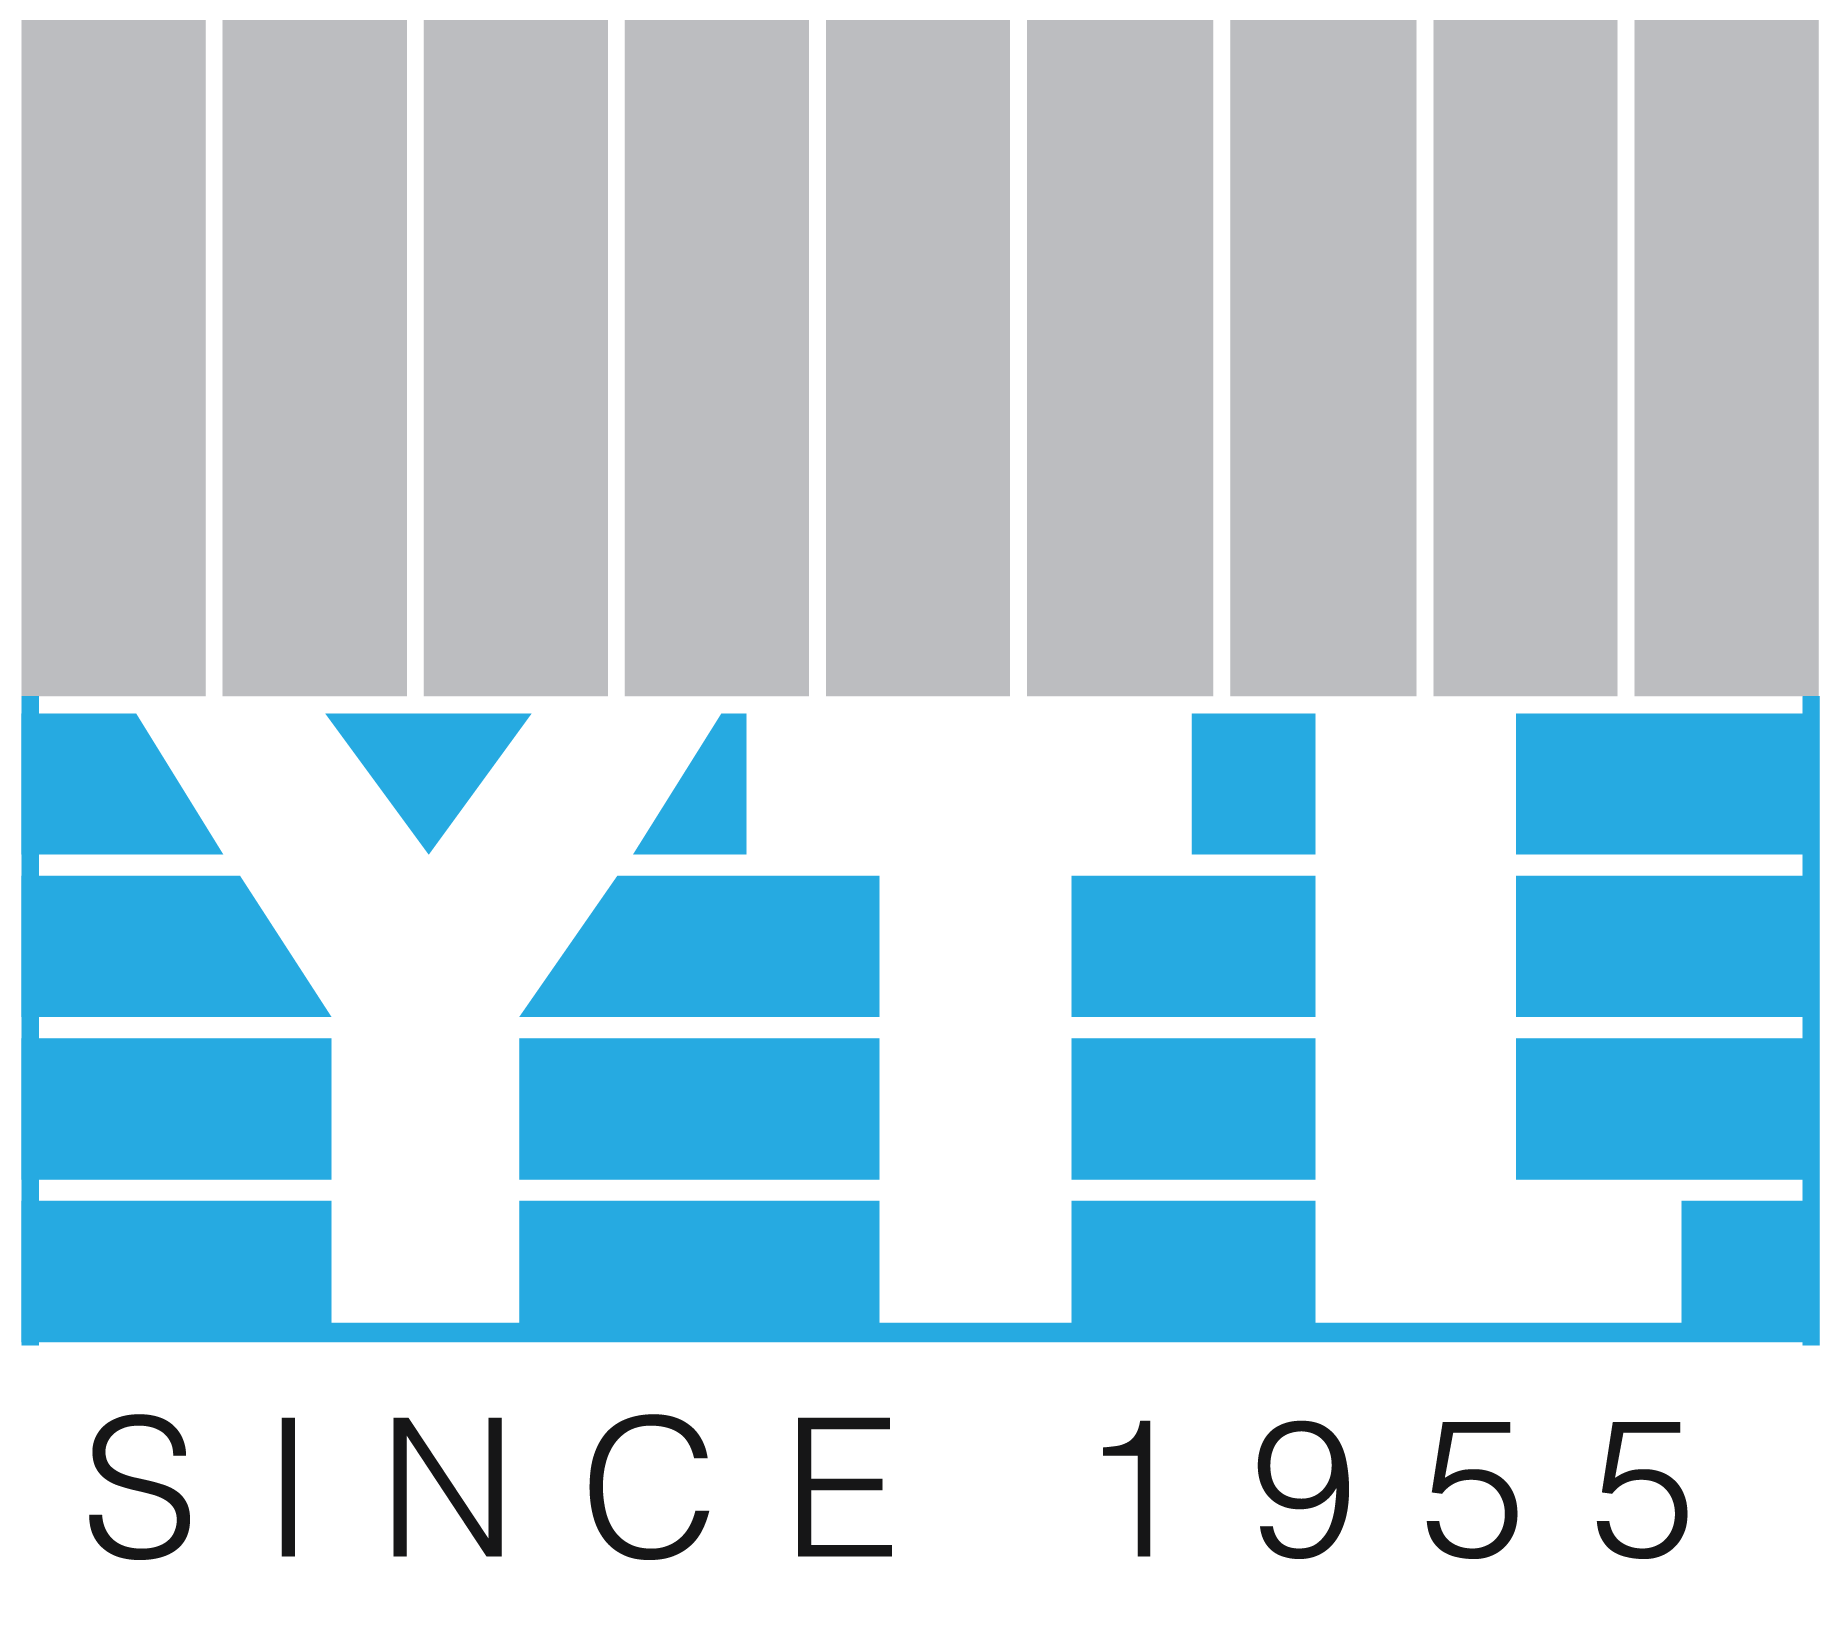 Ytl share price